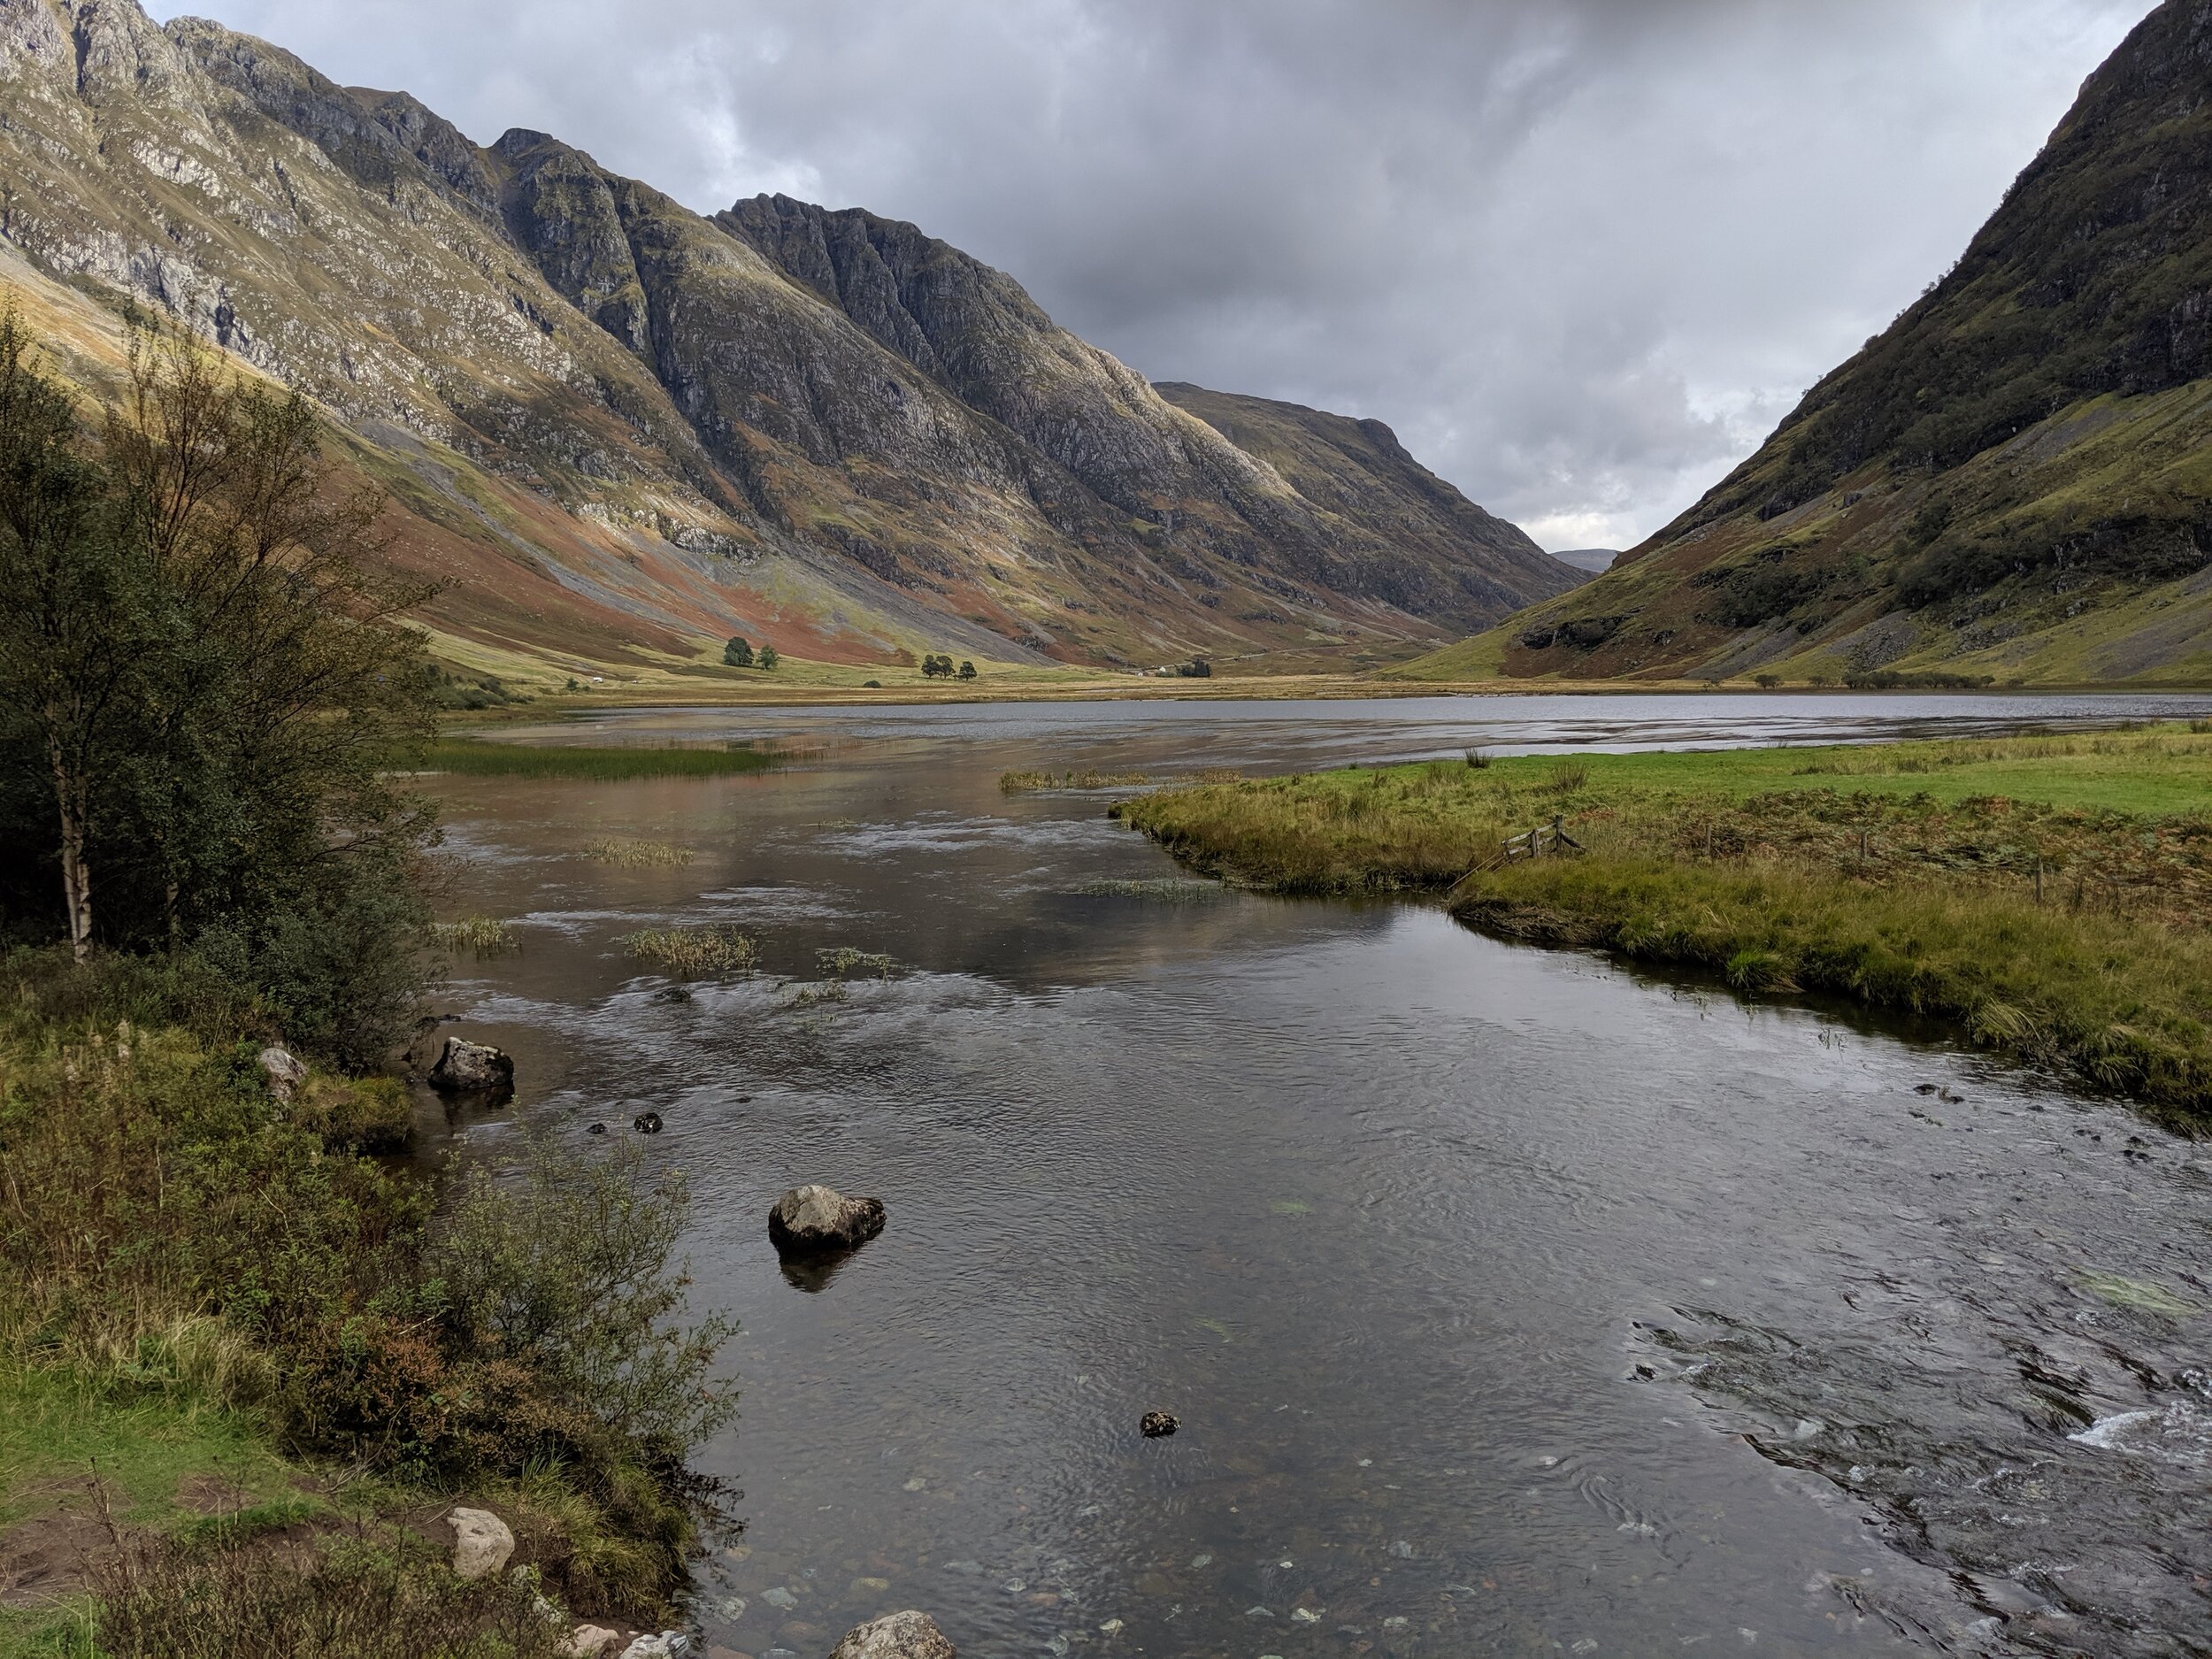 苏格兰风景拍照,旅行詹尼斯·舒伯特。